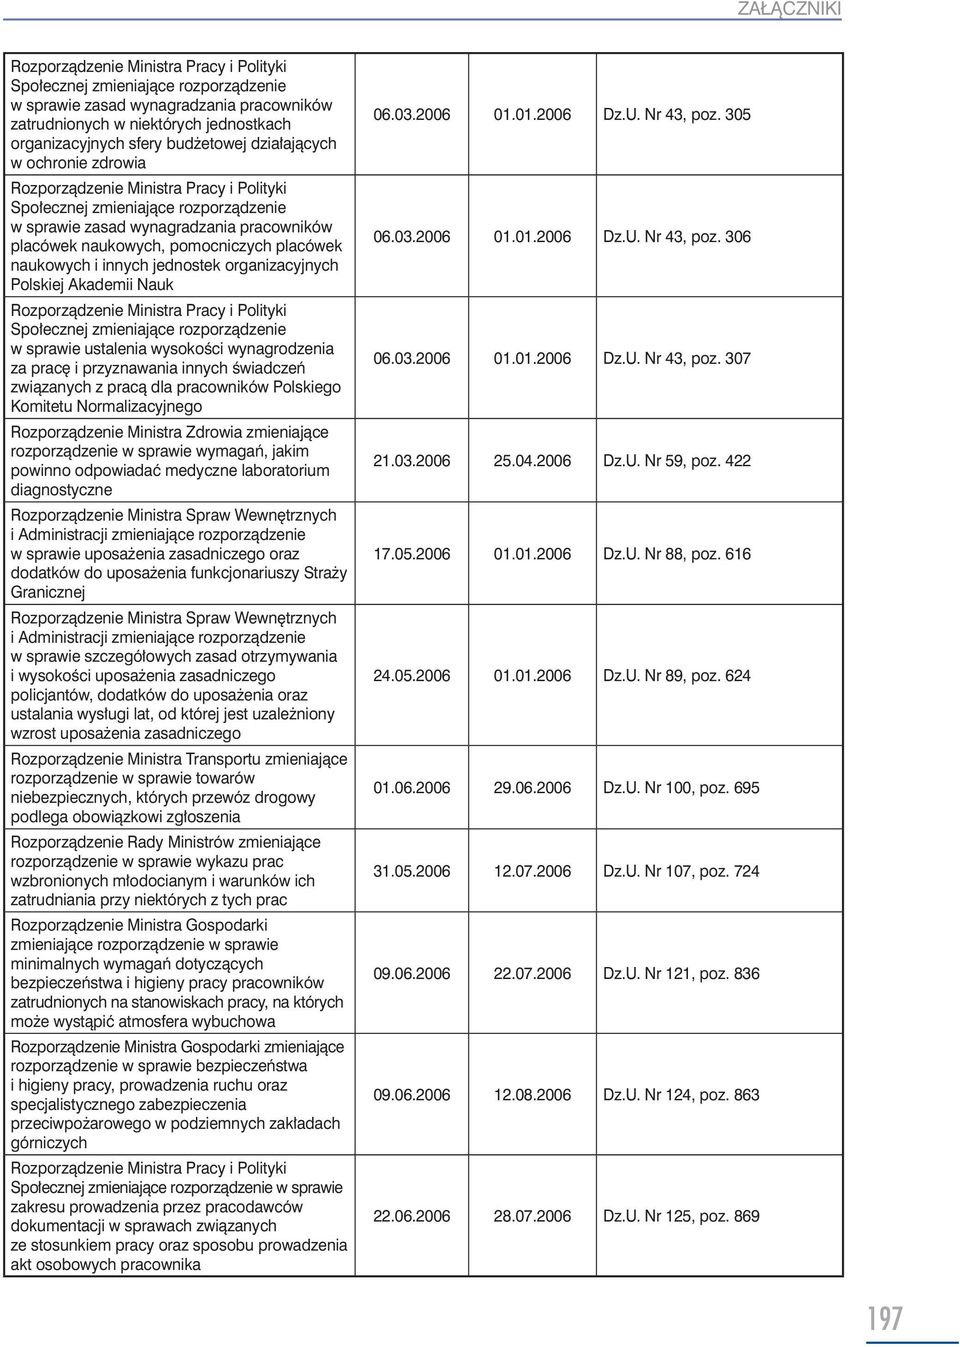 pracą dla pracowników Polskiego Komitetu Normalizacyjnego Rozporządzenie Ministra Zdrowia zmieniające rozporządzenie w sprawie wymagań, jakim powinno odpowiadać medyczne laboratorium diagnostyczne